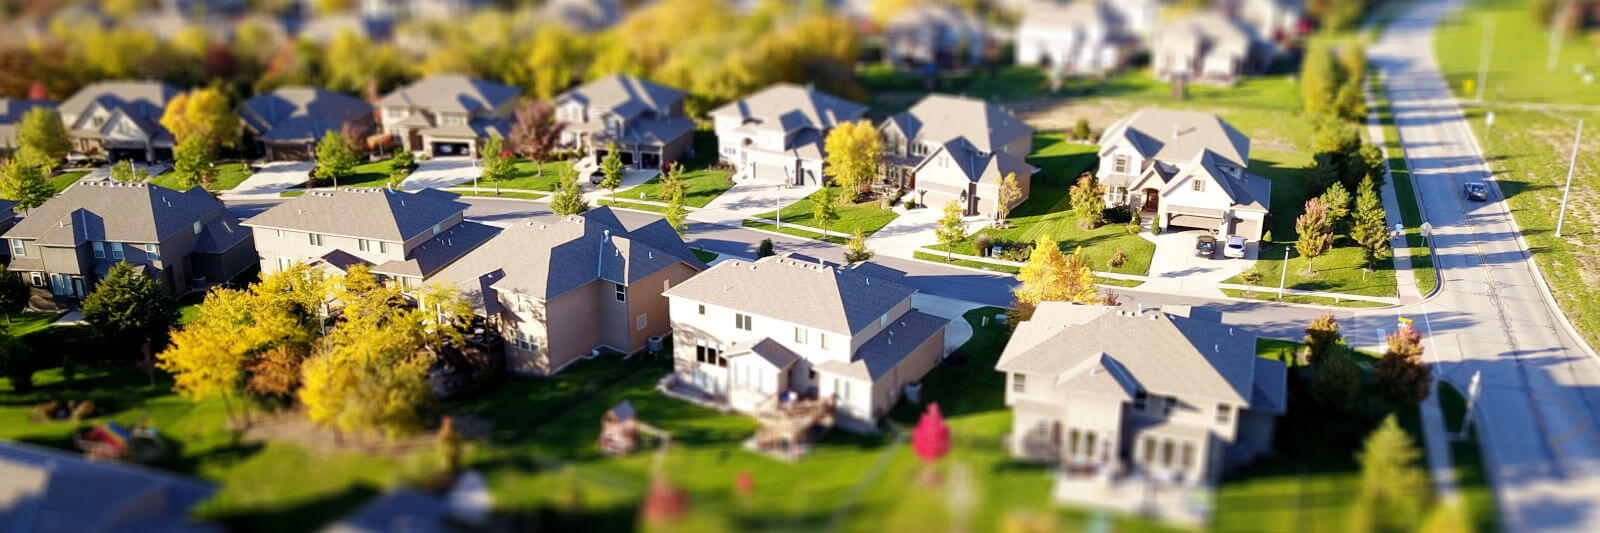 neighborhood homes